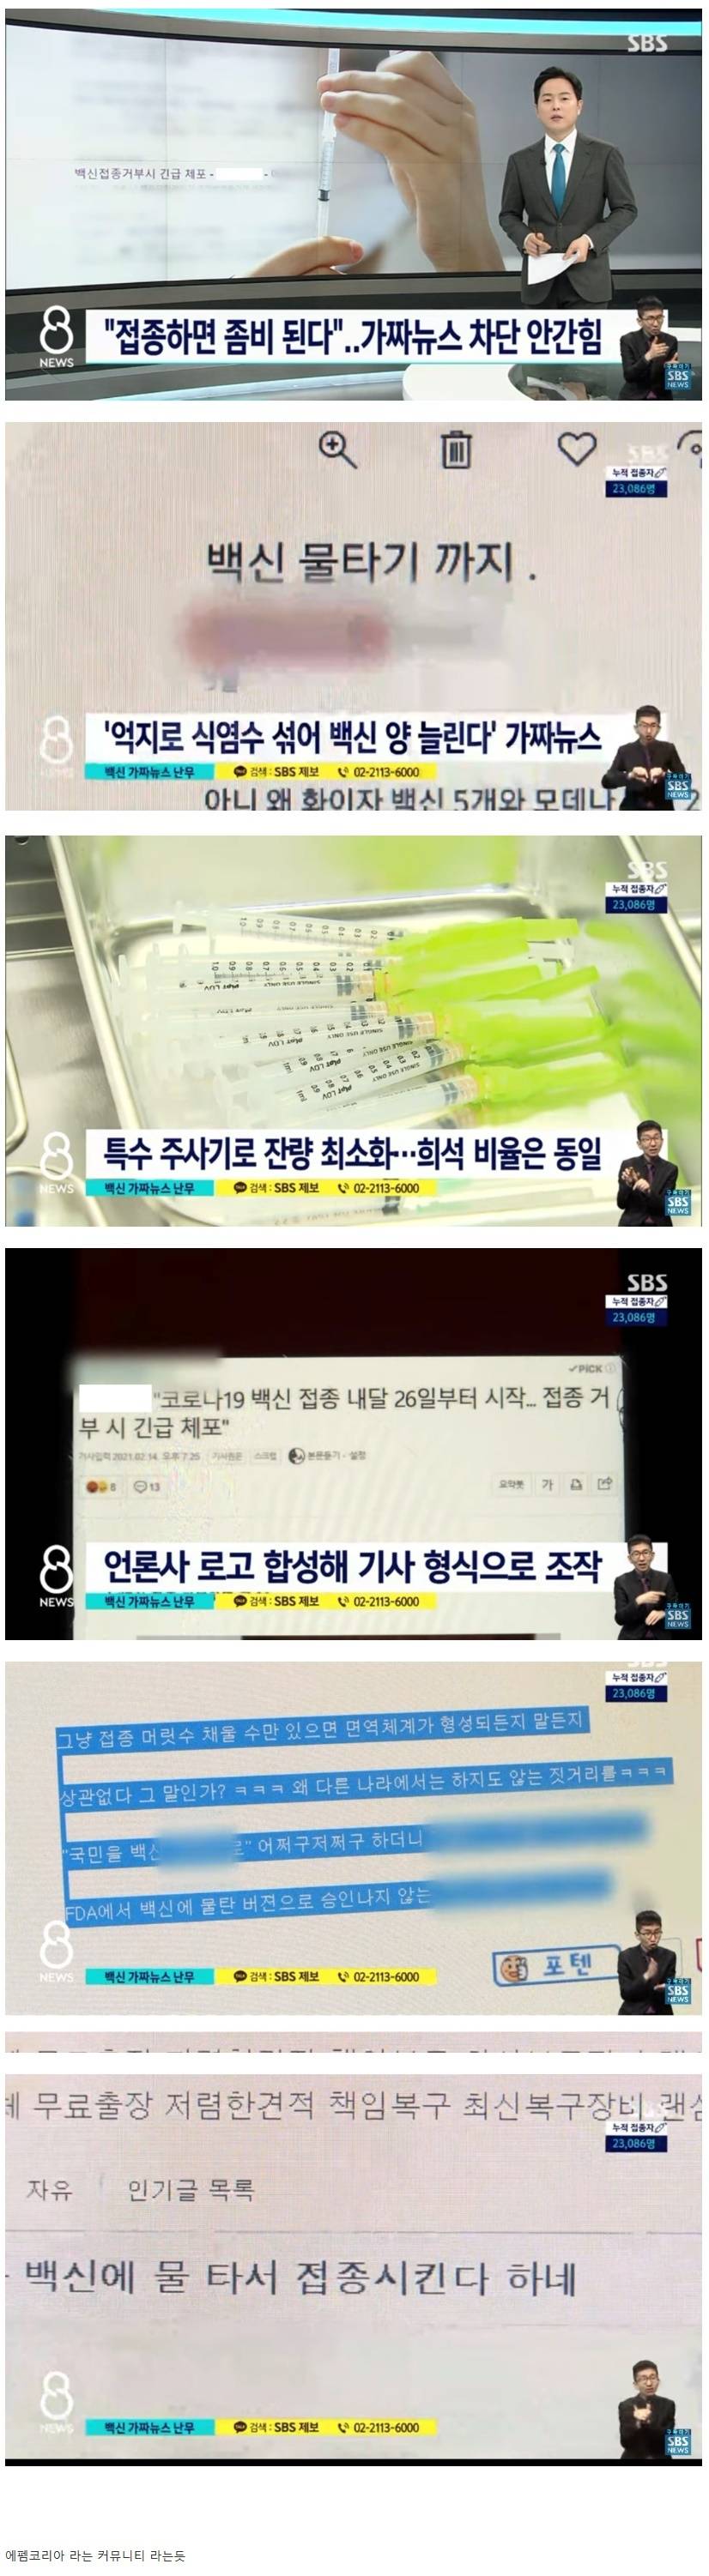 오늘 백신 관련 가짜뉴스 유포로 SBS에서 저격당한 사이트.jpg | 인스티즈